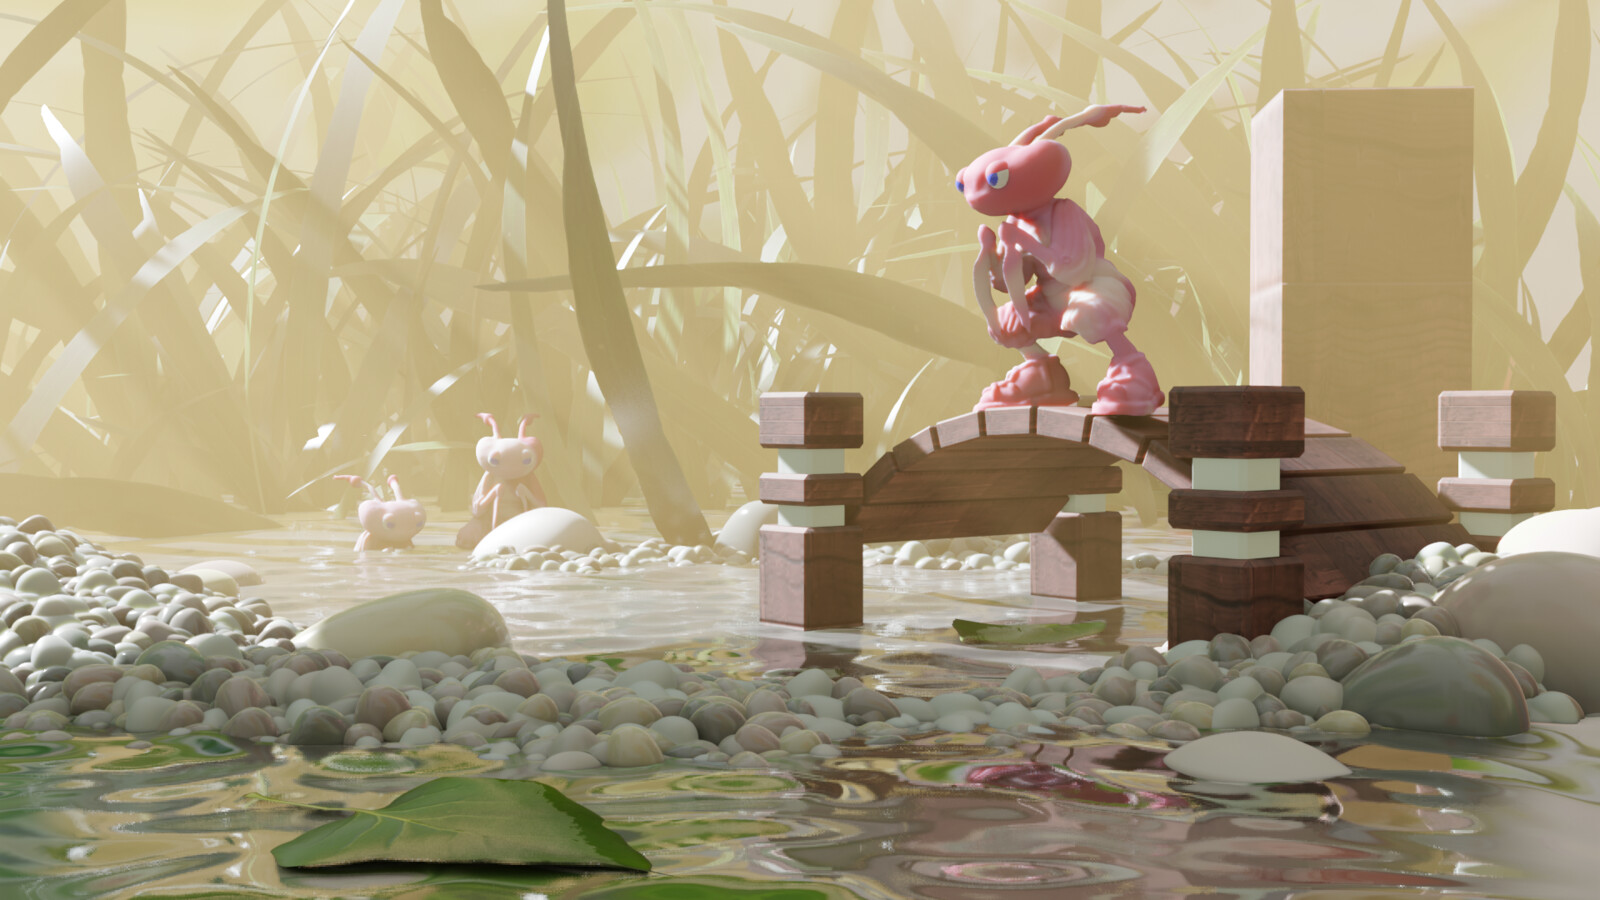 Finished scene, rendered in Blender's Eevee renderer.